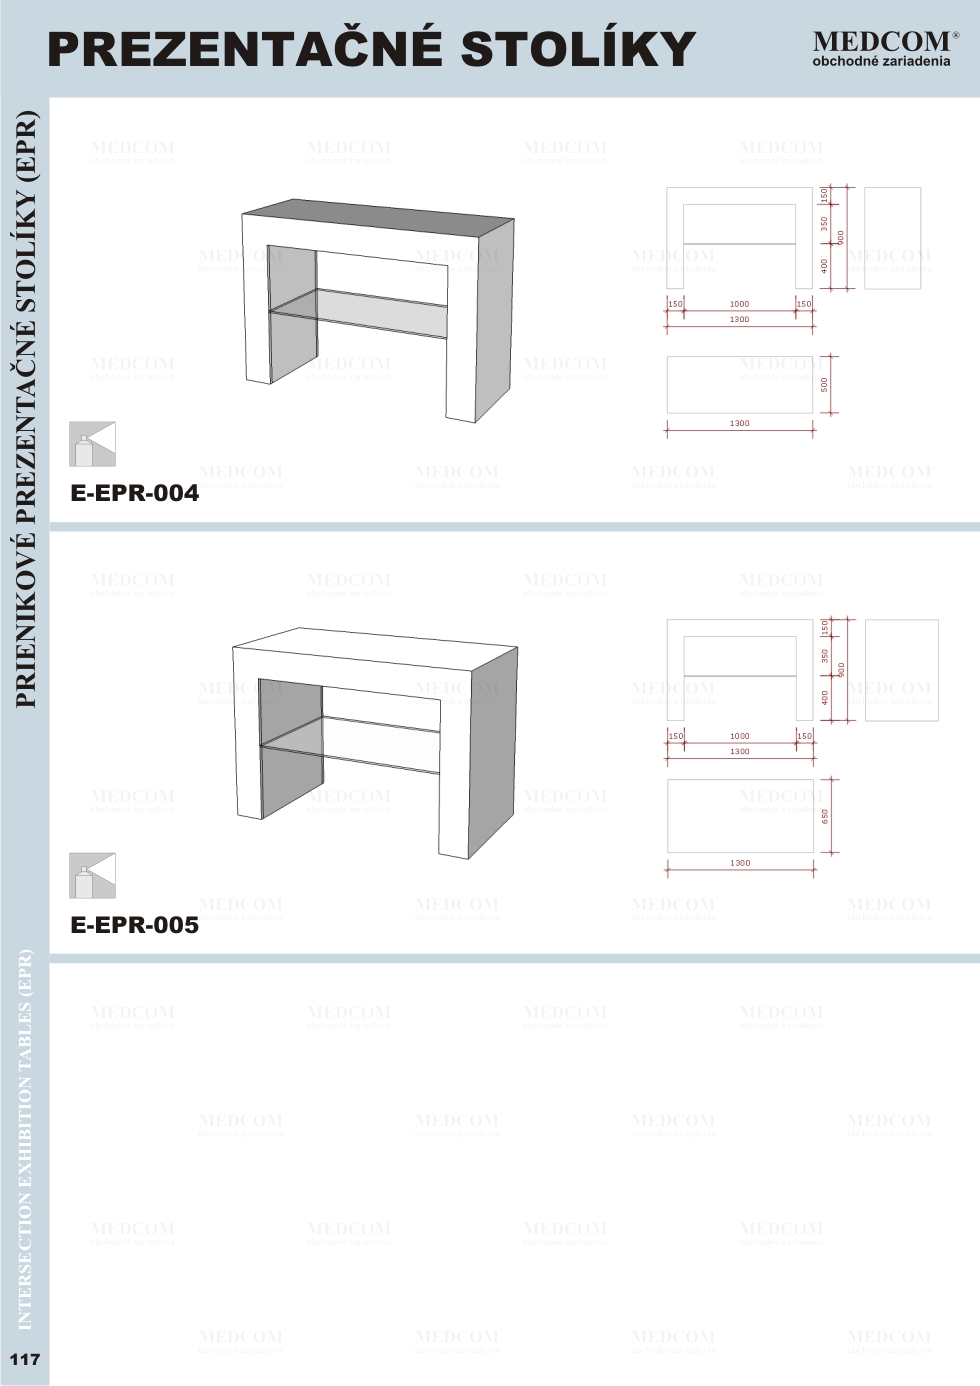 Exkluzívne zostavy a komponenty; Prezentačné stolíky; Prienikové prezentačné stolíky